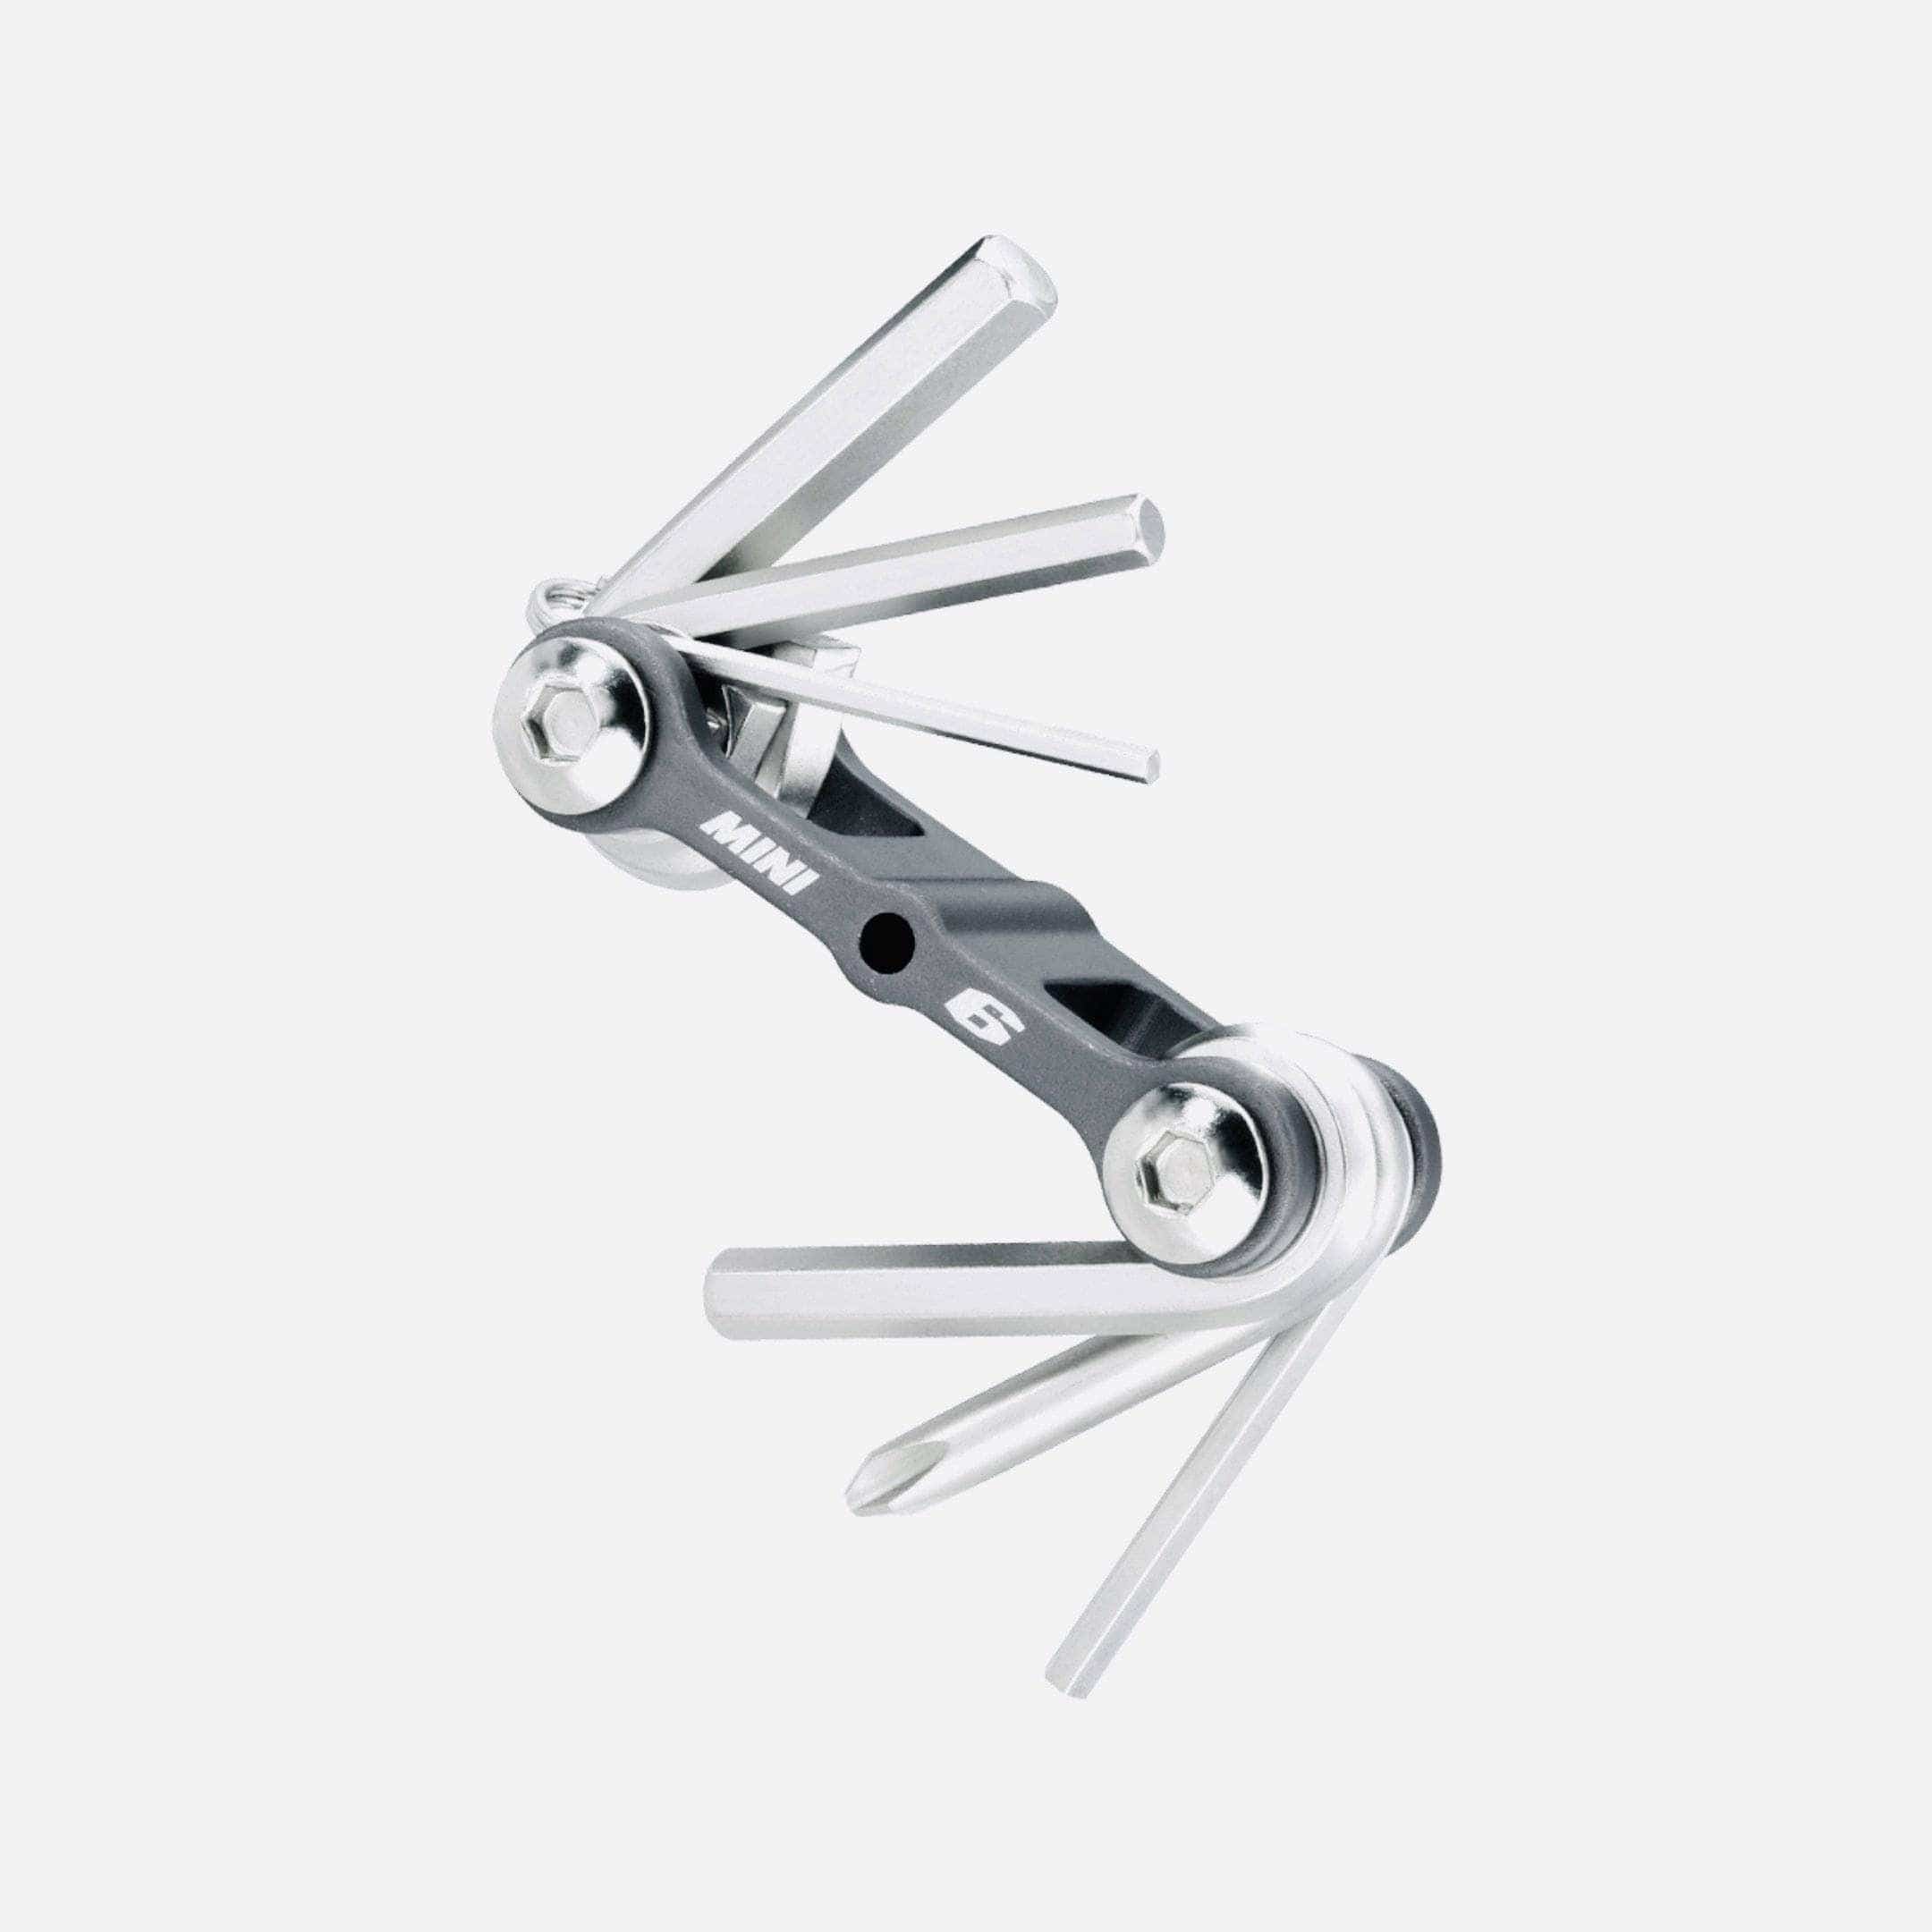 Topeak Mini 6 Multi Tool Accessories - Tools - Multi-Tools